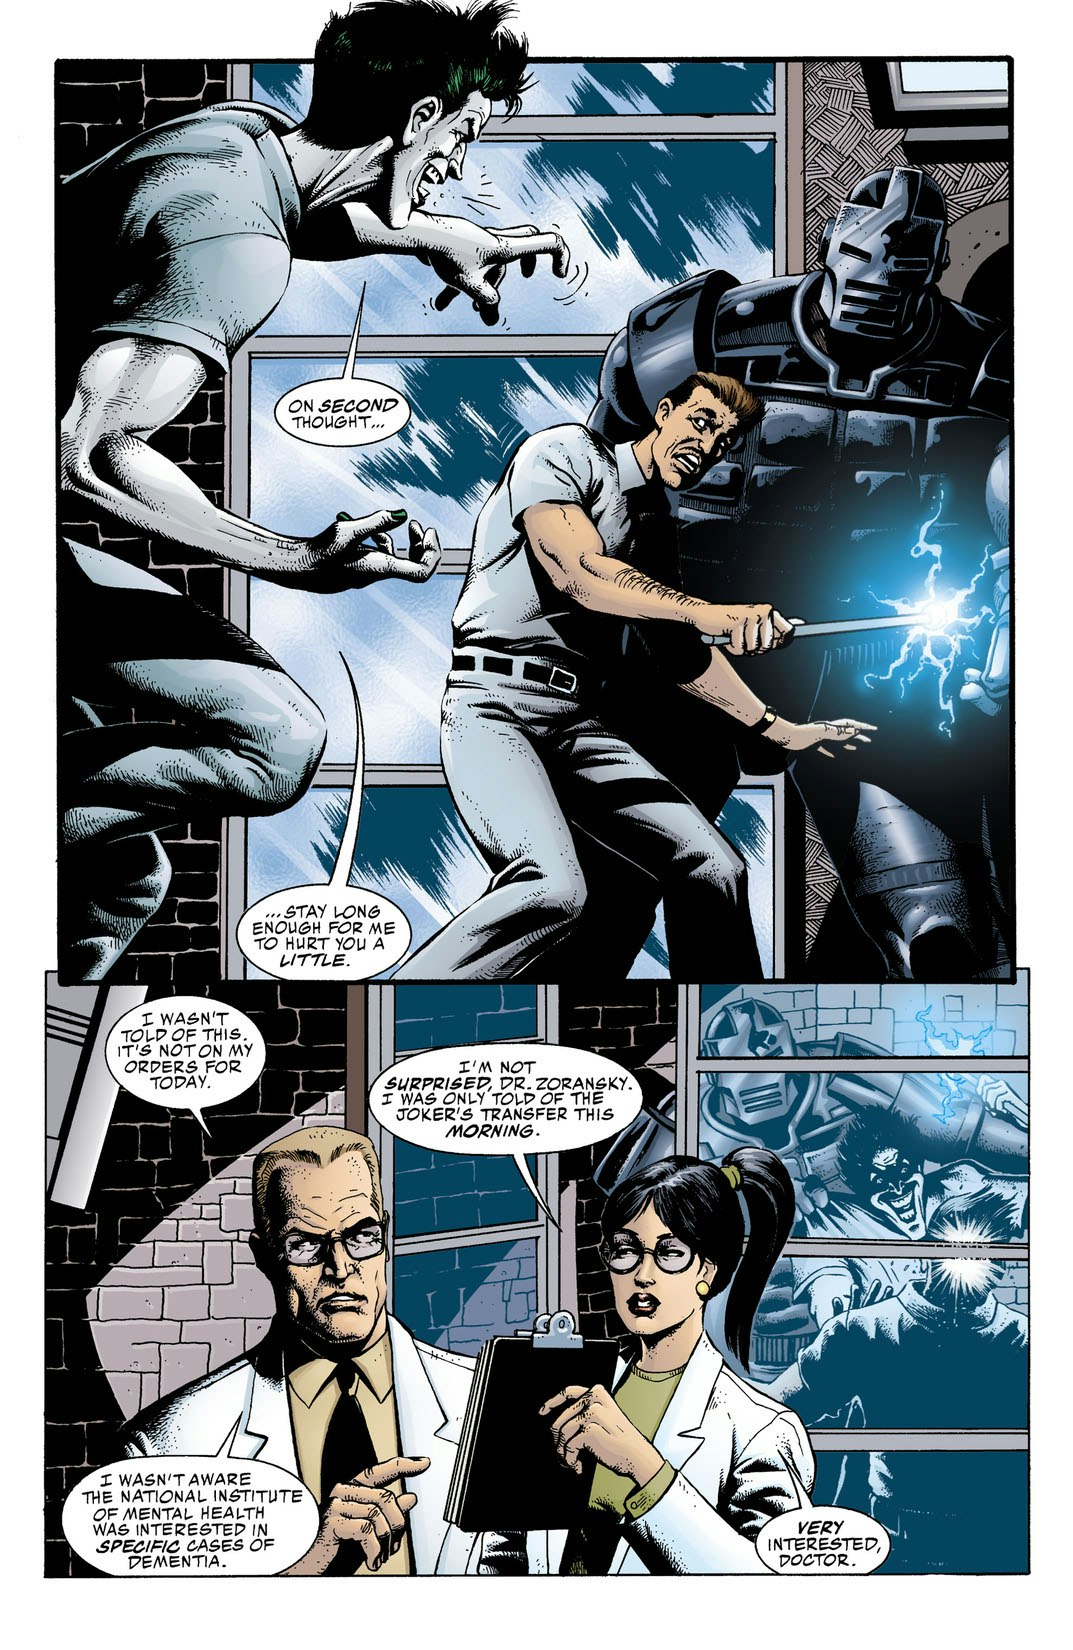 DC Comics Presents: Batman - The Demon Laughs (2011-) #1